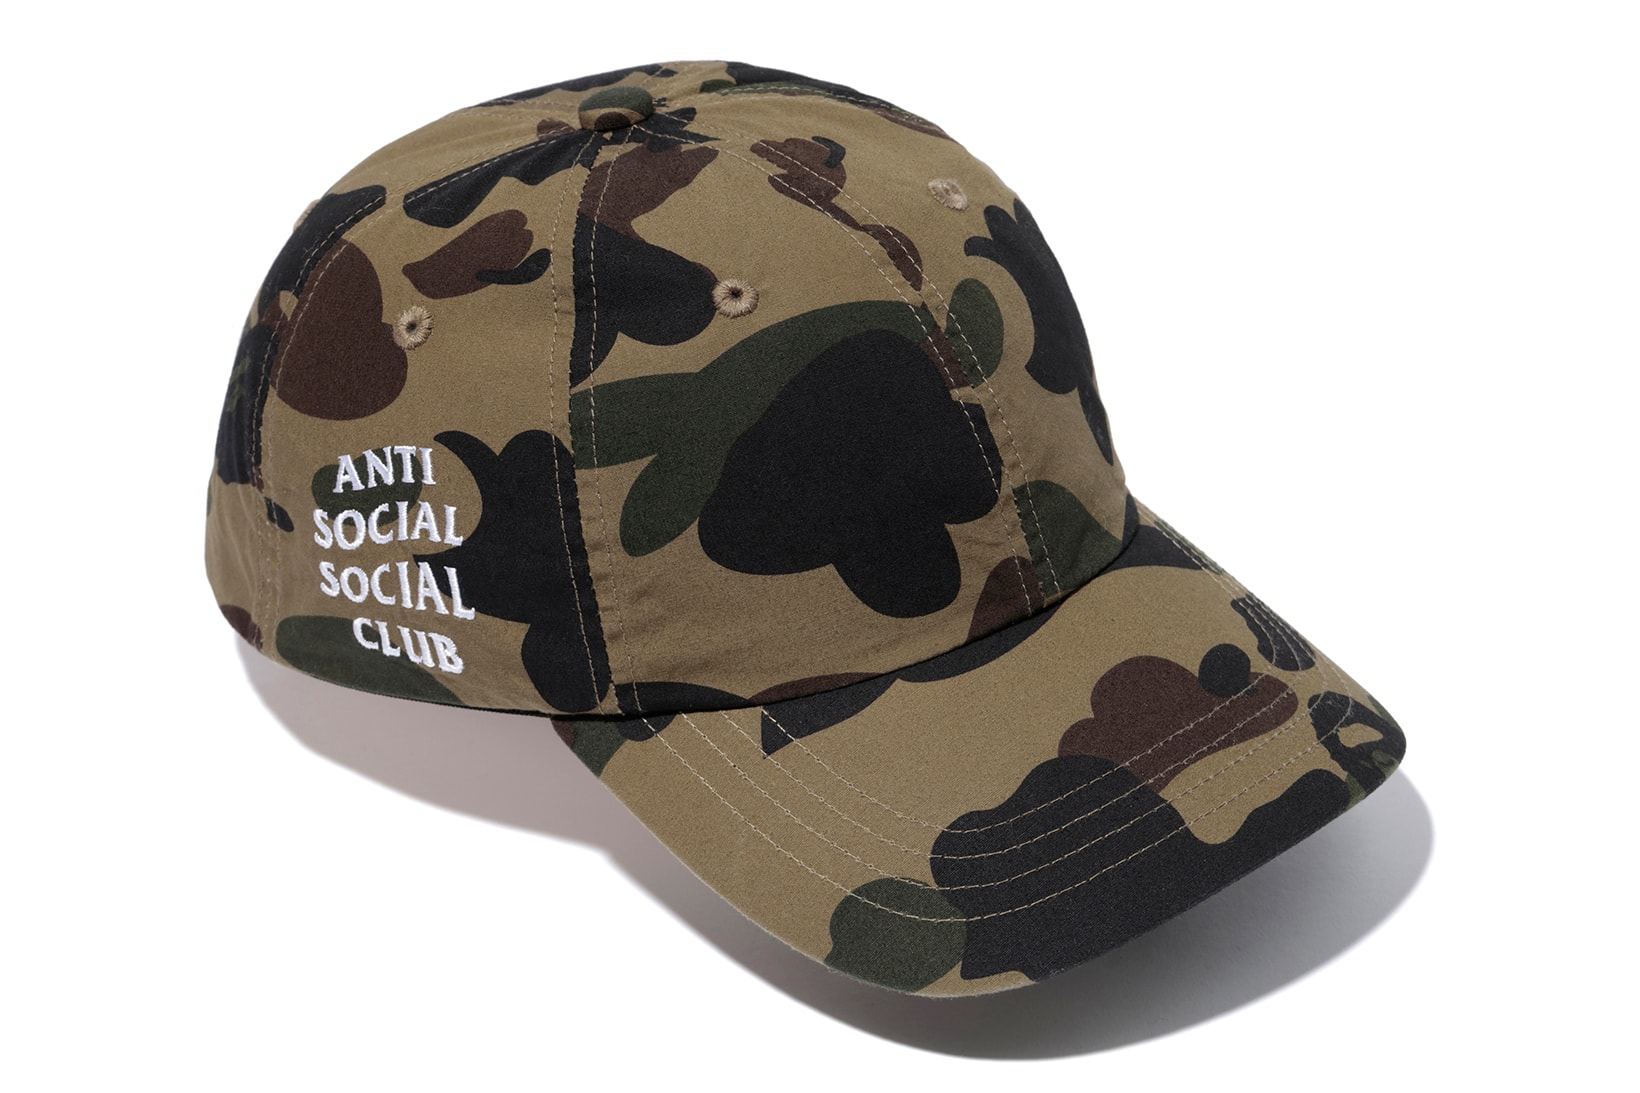 Anti Social Social Club x BAPE Green Camo Cap Full